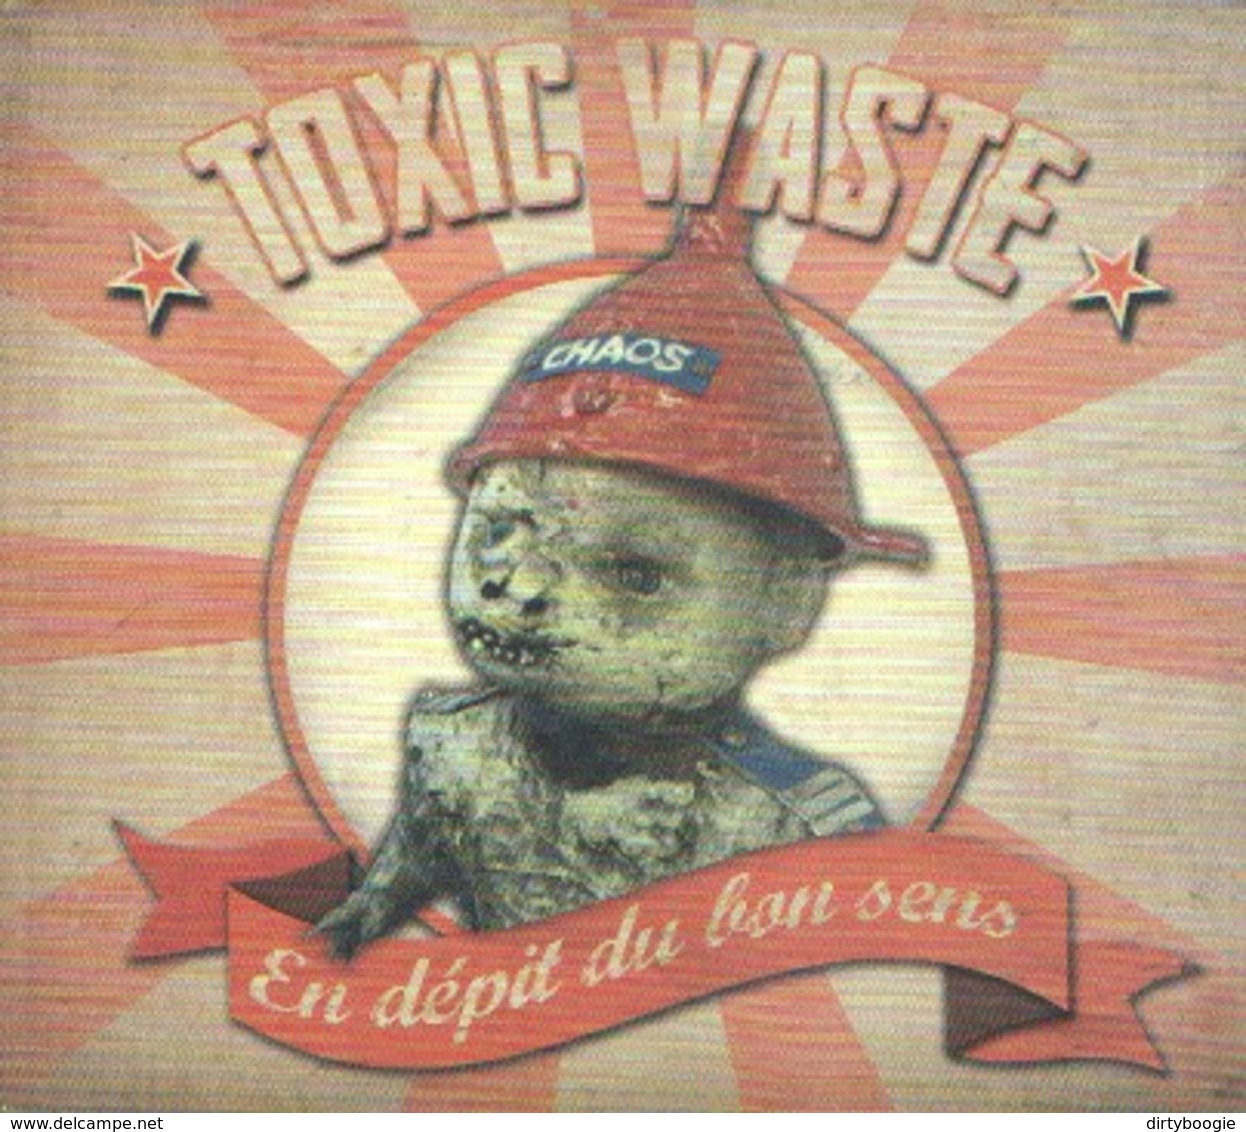 TOXIC WASTE - En Dépit Du Bon Sens - CD - PUNK ROCK - Punk